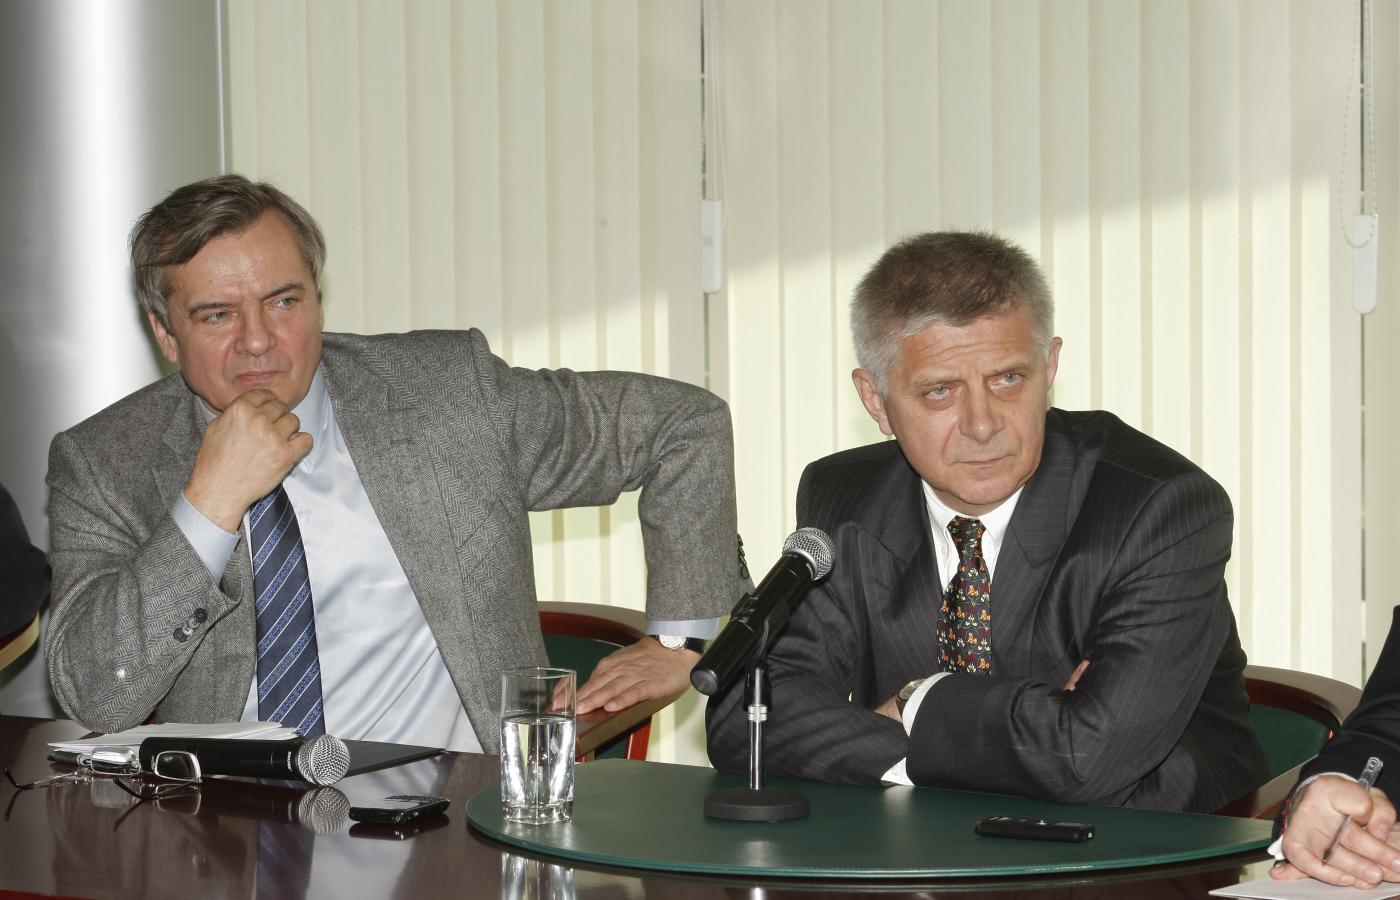 Prezes NBP prof. Marek Belka (z prawej) i redaktor naczelny POLITYKI Jerzy Baczyński (z lewej) słuchają pytań zadawanych z sali.